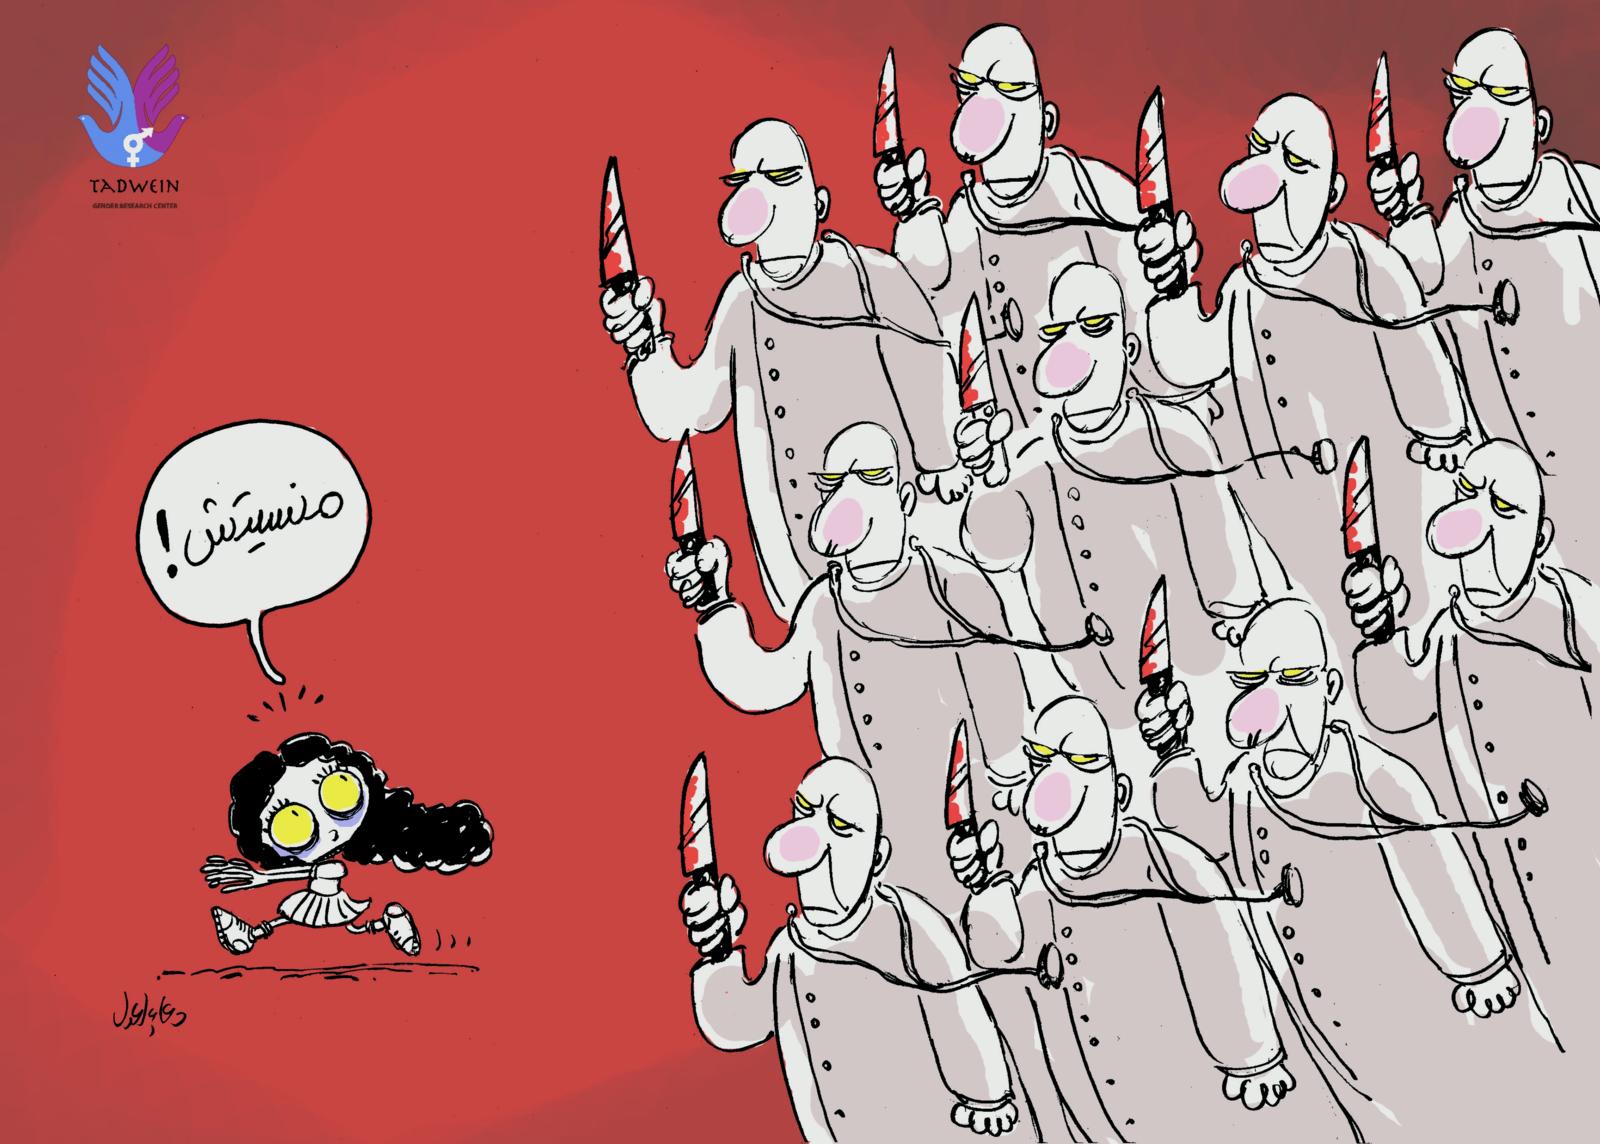 هل تشديد العقوبات سوف يمنع ختان الإناث في مصر؟